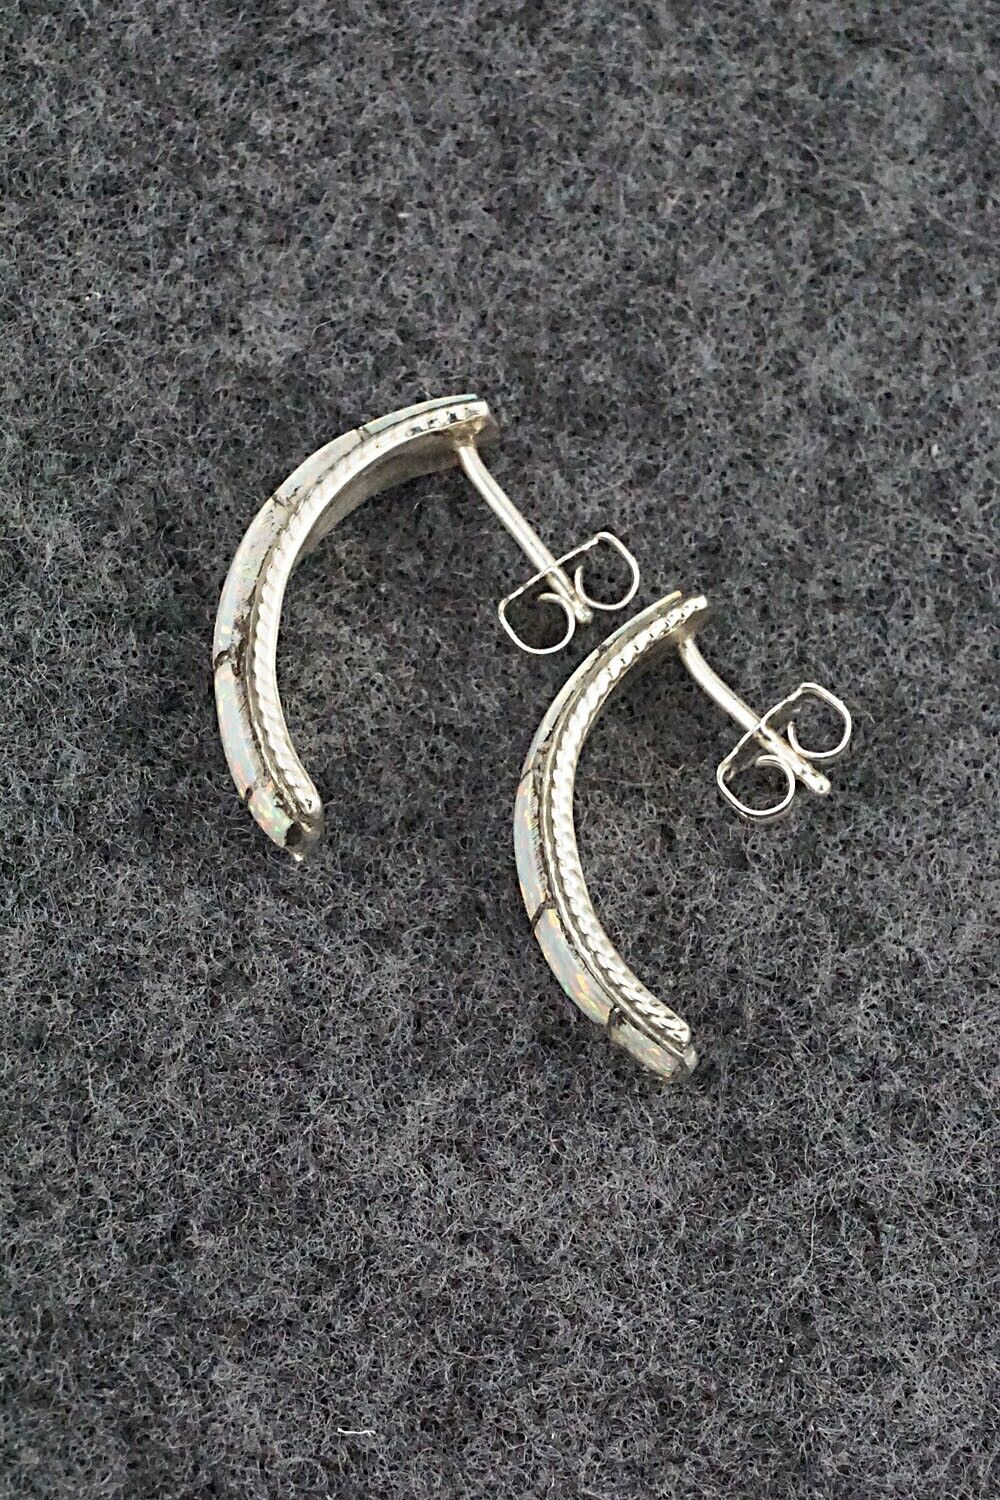 Opalite & Sterling Silver Earrings - Zenia Kylestewa